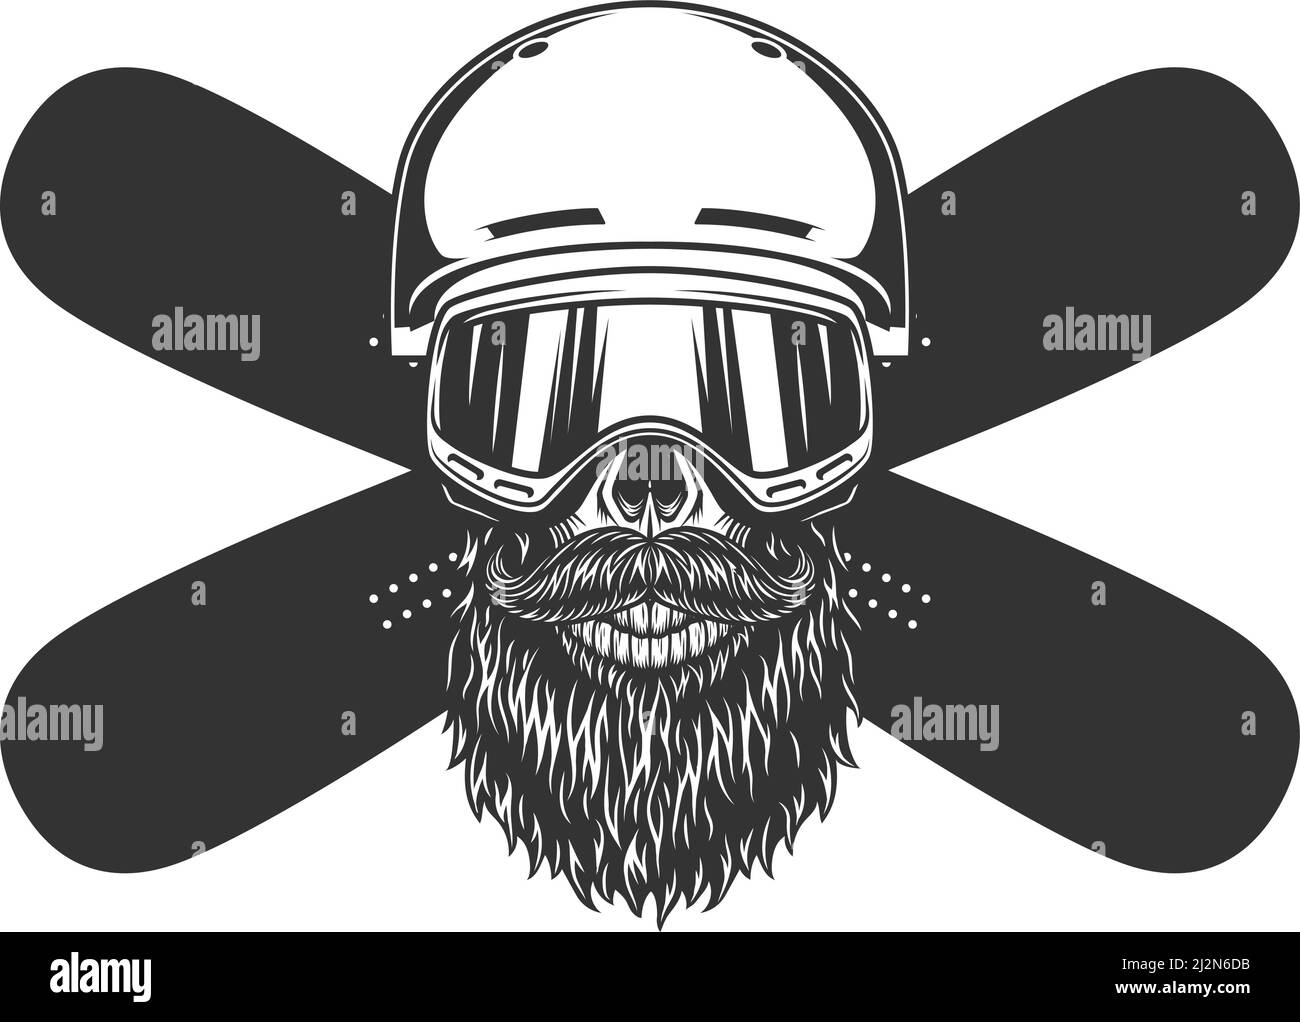 Calavera con diseño de snowboarder con barba y bigote vintage en máscara de casco y. tablas de nieve cruzadas ilustración vectorial aislada Ilustración del Vector